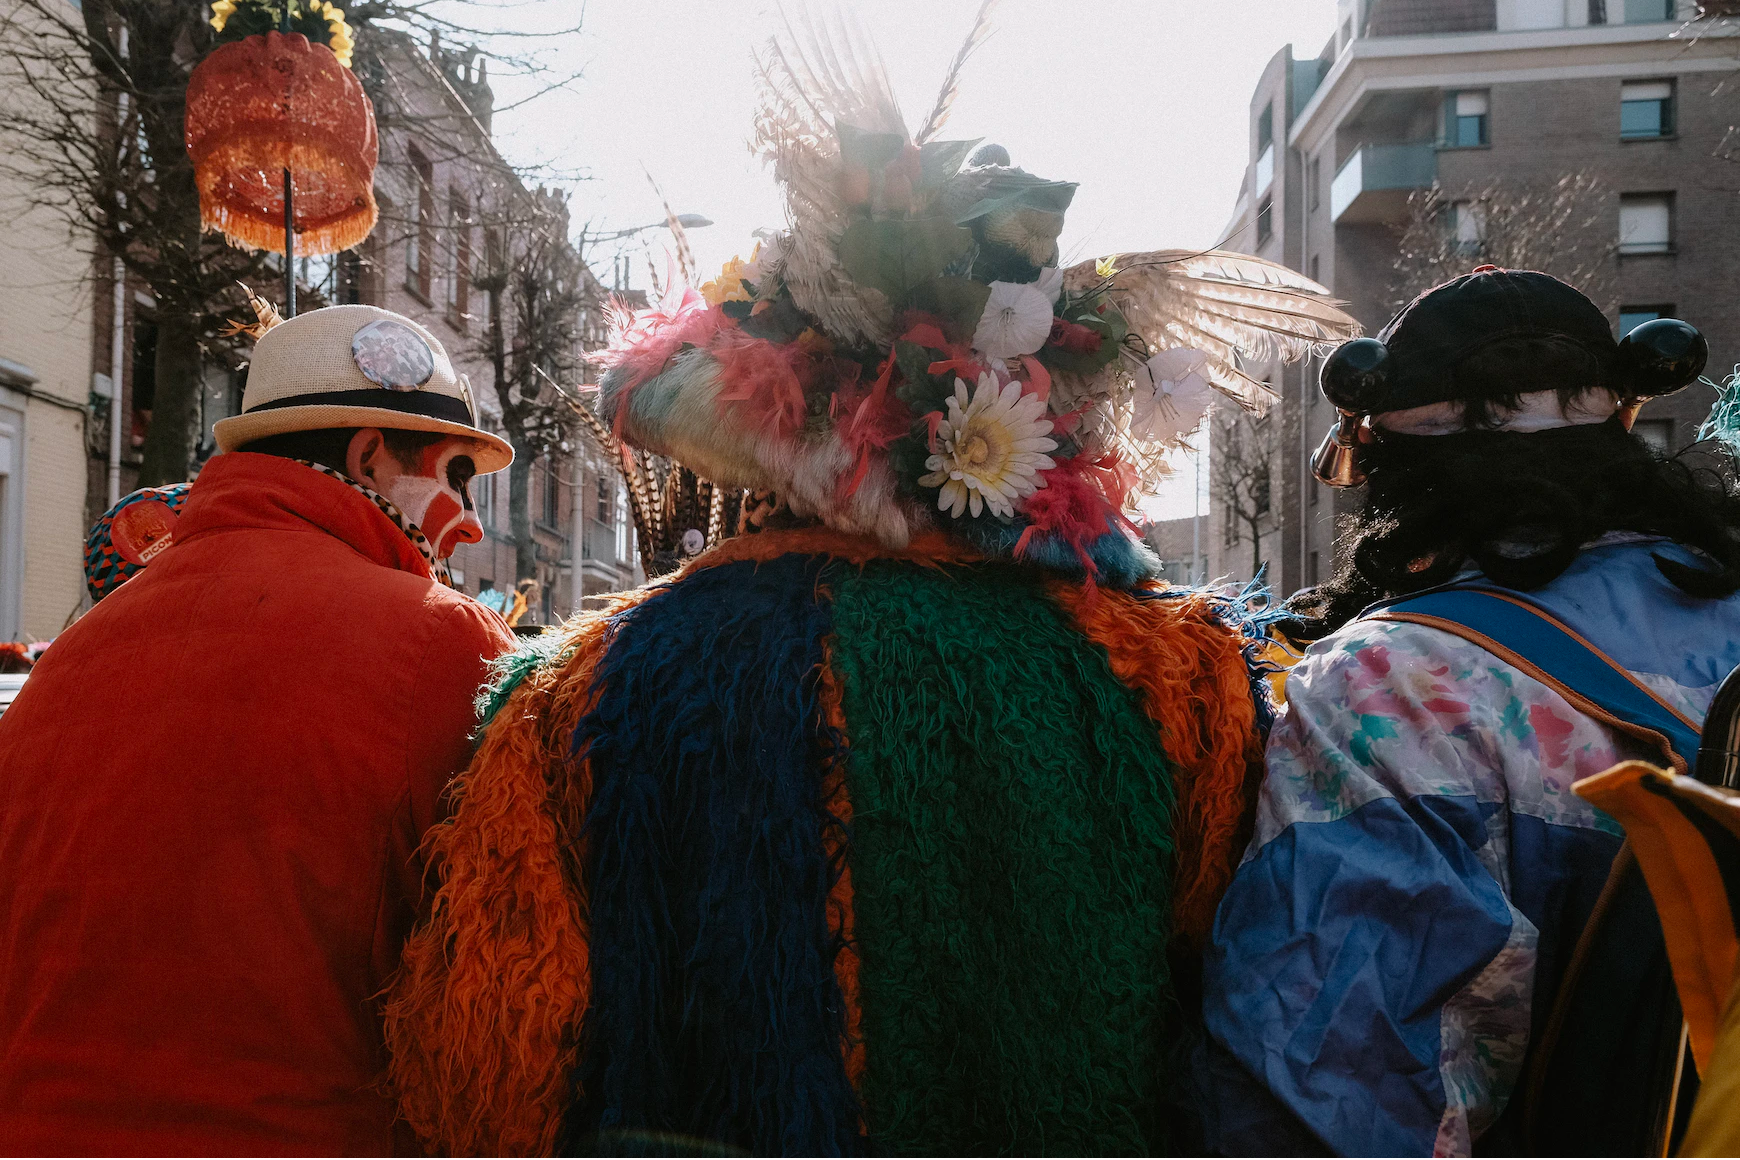 personnes en costumes lors d'un carnaval.png